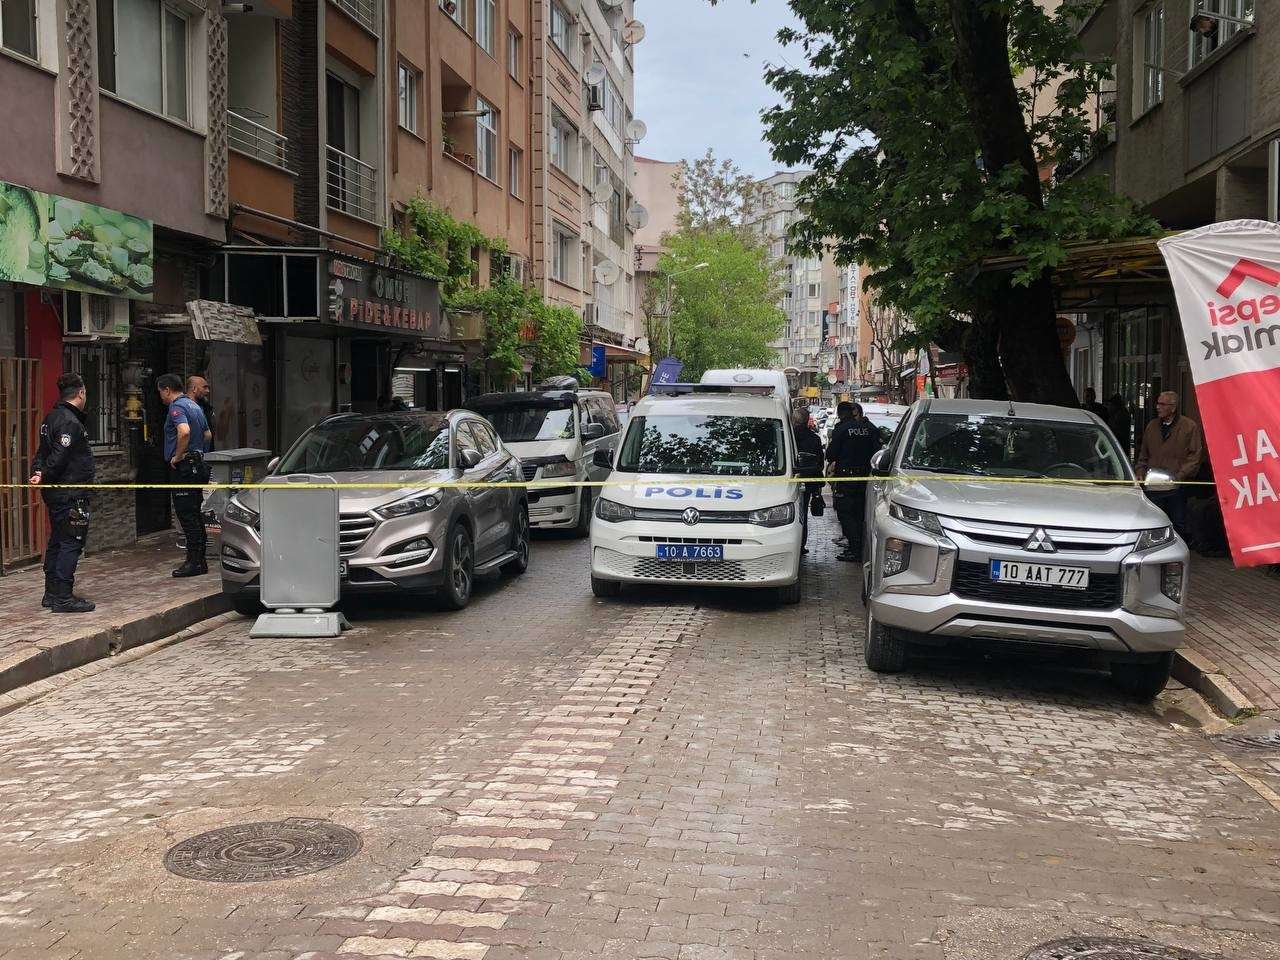 Balıkesir'in Bandırma ilçesinde, iki taraf arasında çıkan tartışmada 1 kişi silahla vurularak yaralandı.